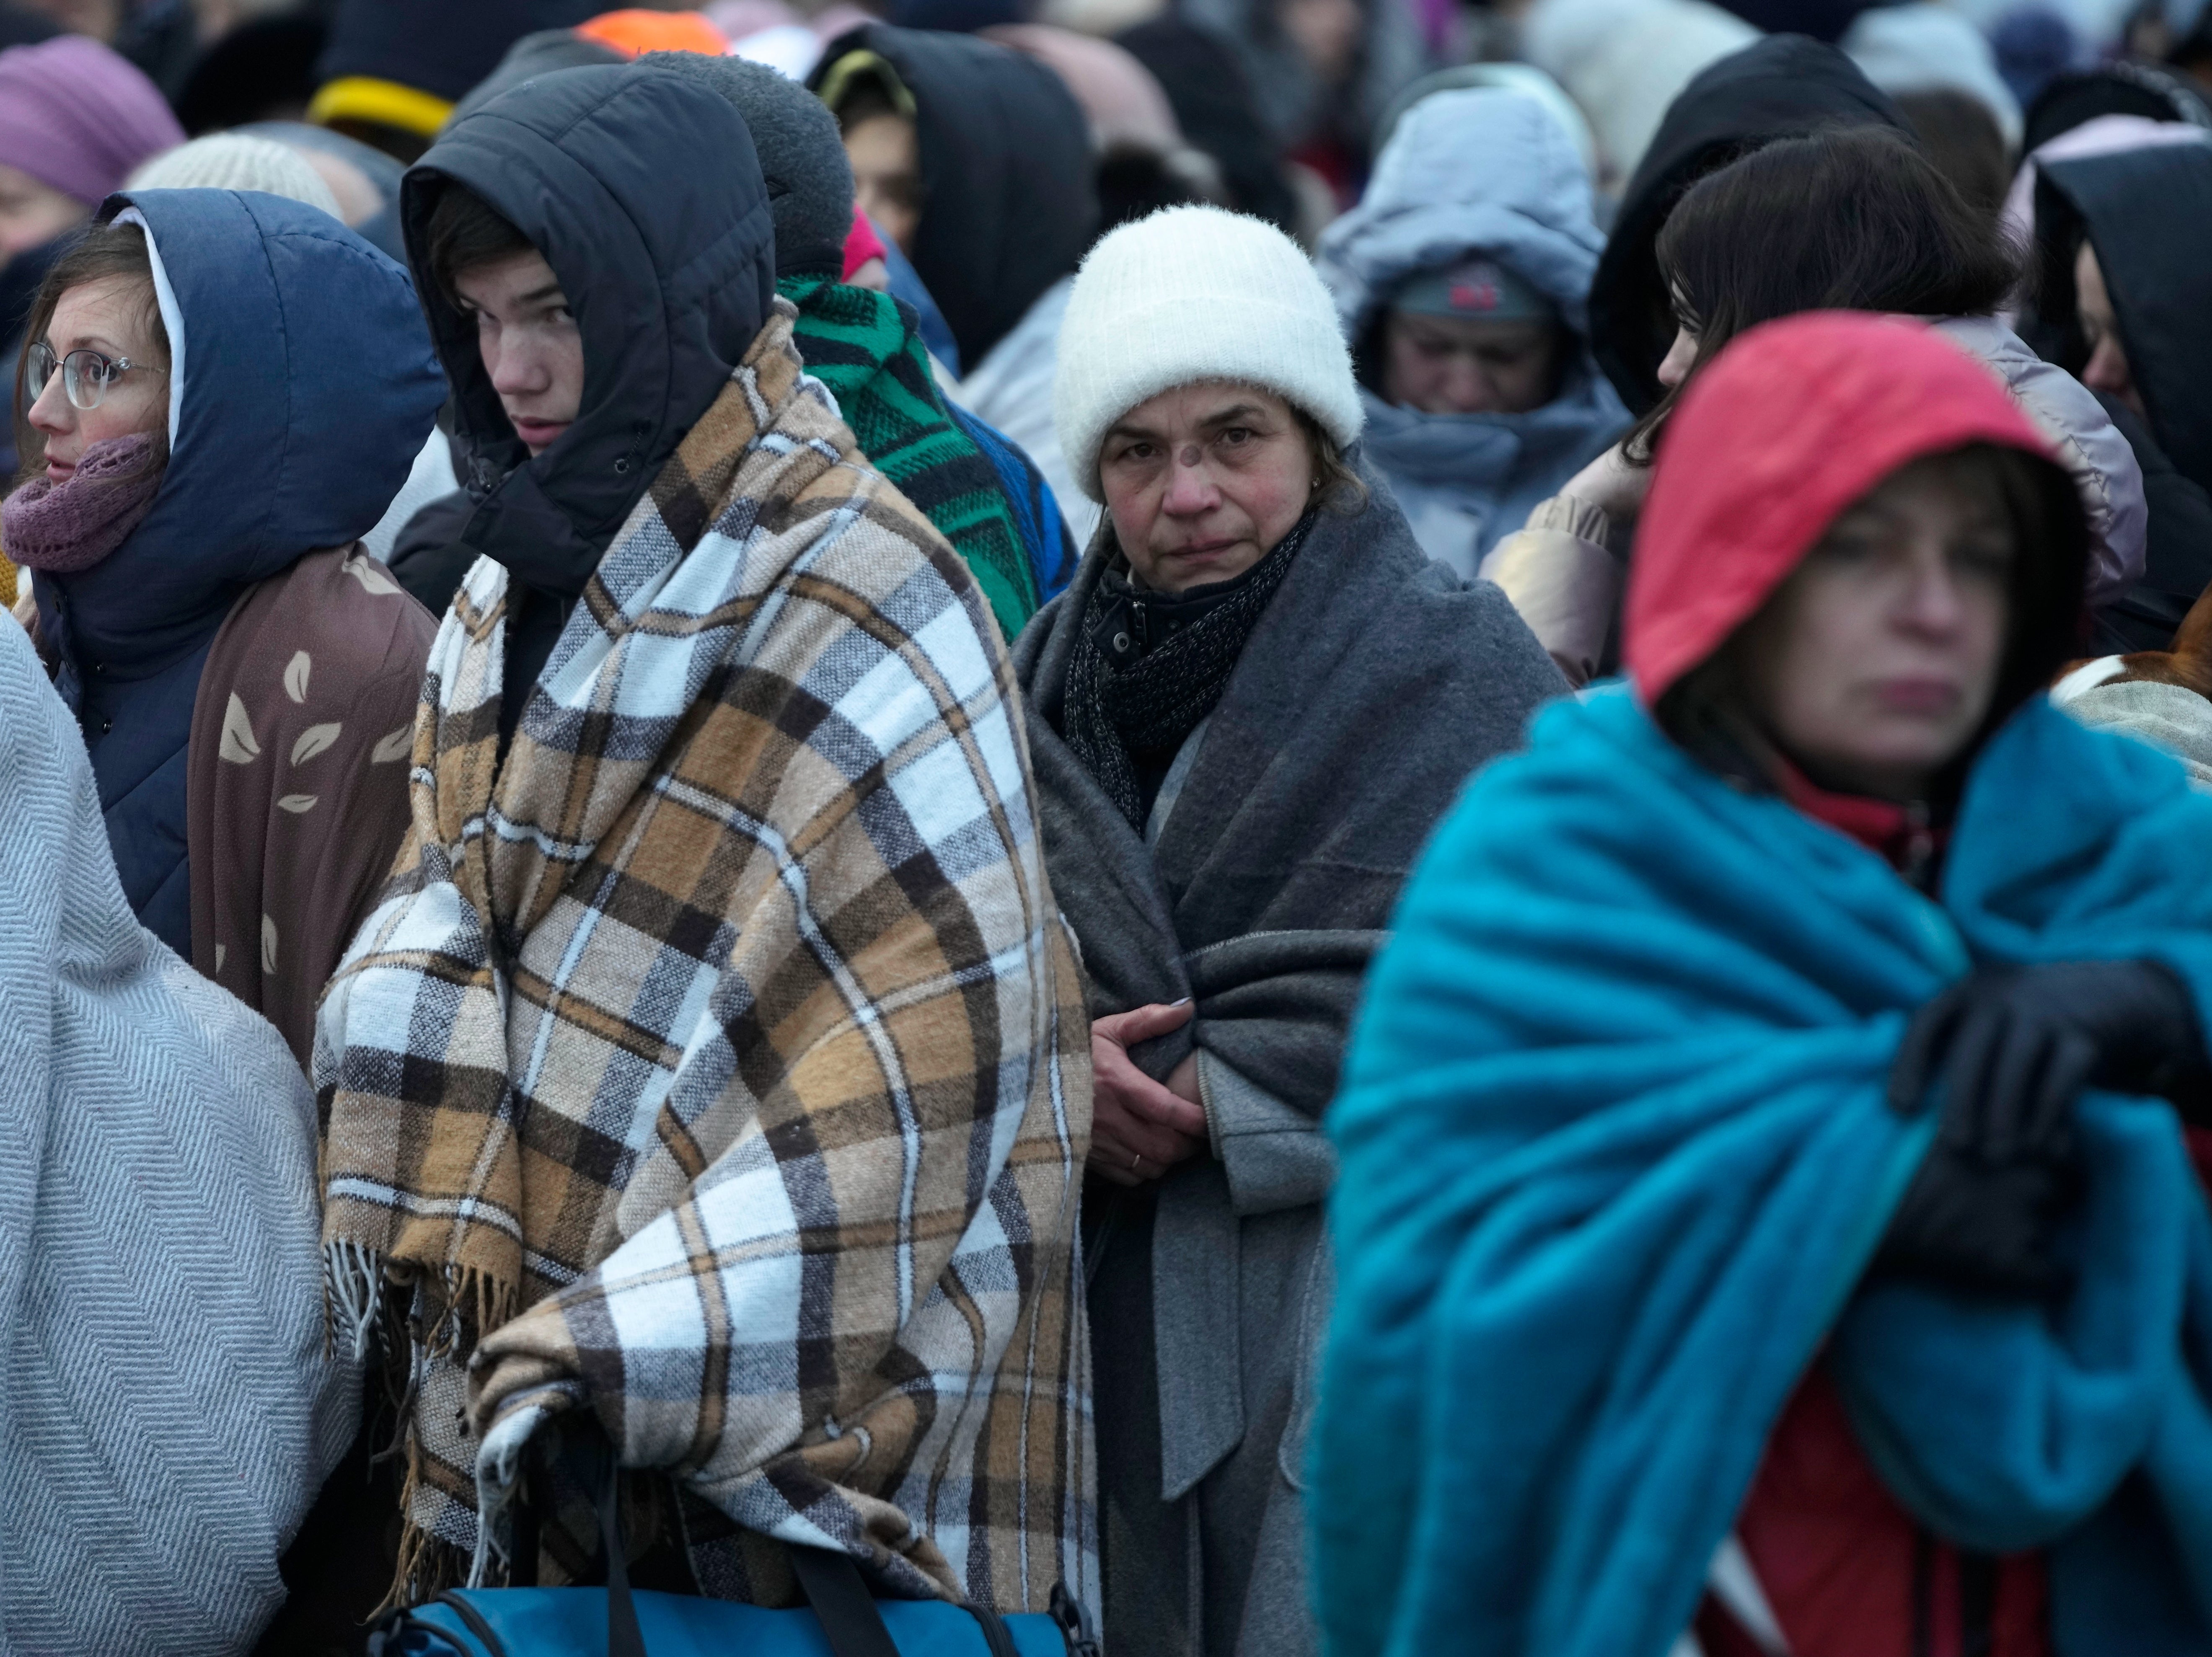 Los refugiados, en su mayoría mujeres y niños, esperan para trasladarse después de huir de Ucrania y llegar a la frontera en Medyka, Polonia, el 7 de marzo de 2022